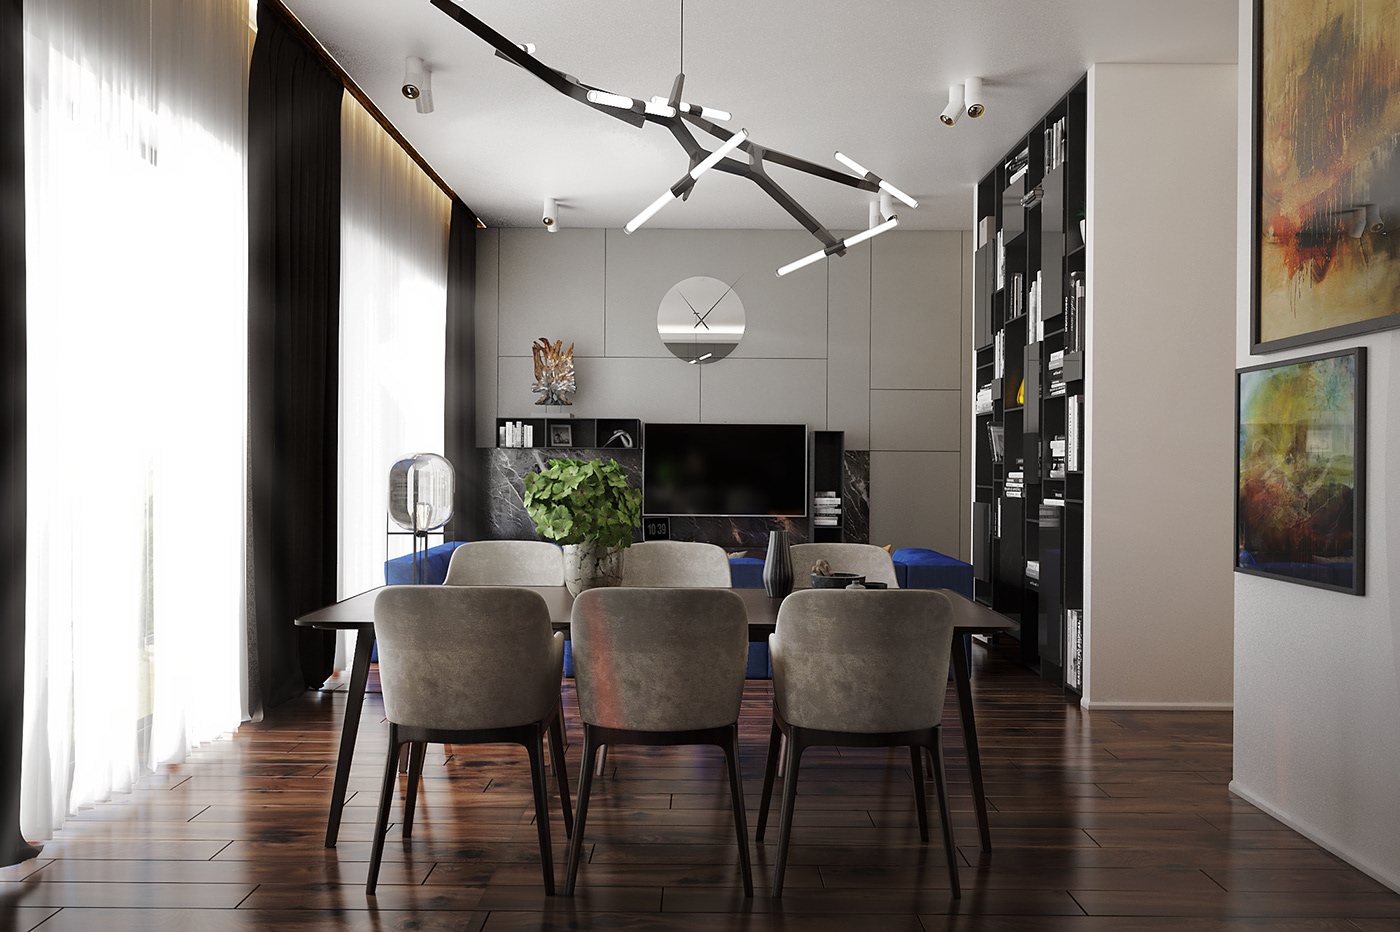 Interior interiordesign design modeling rendering visualisation 3D 3dmodeling modern furniture